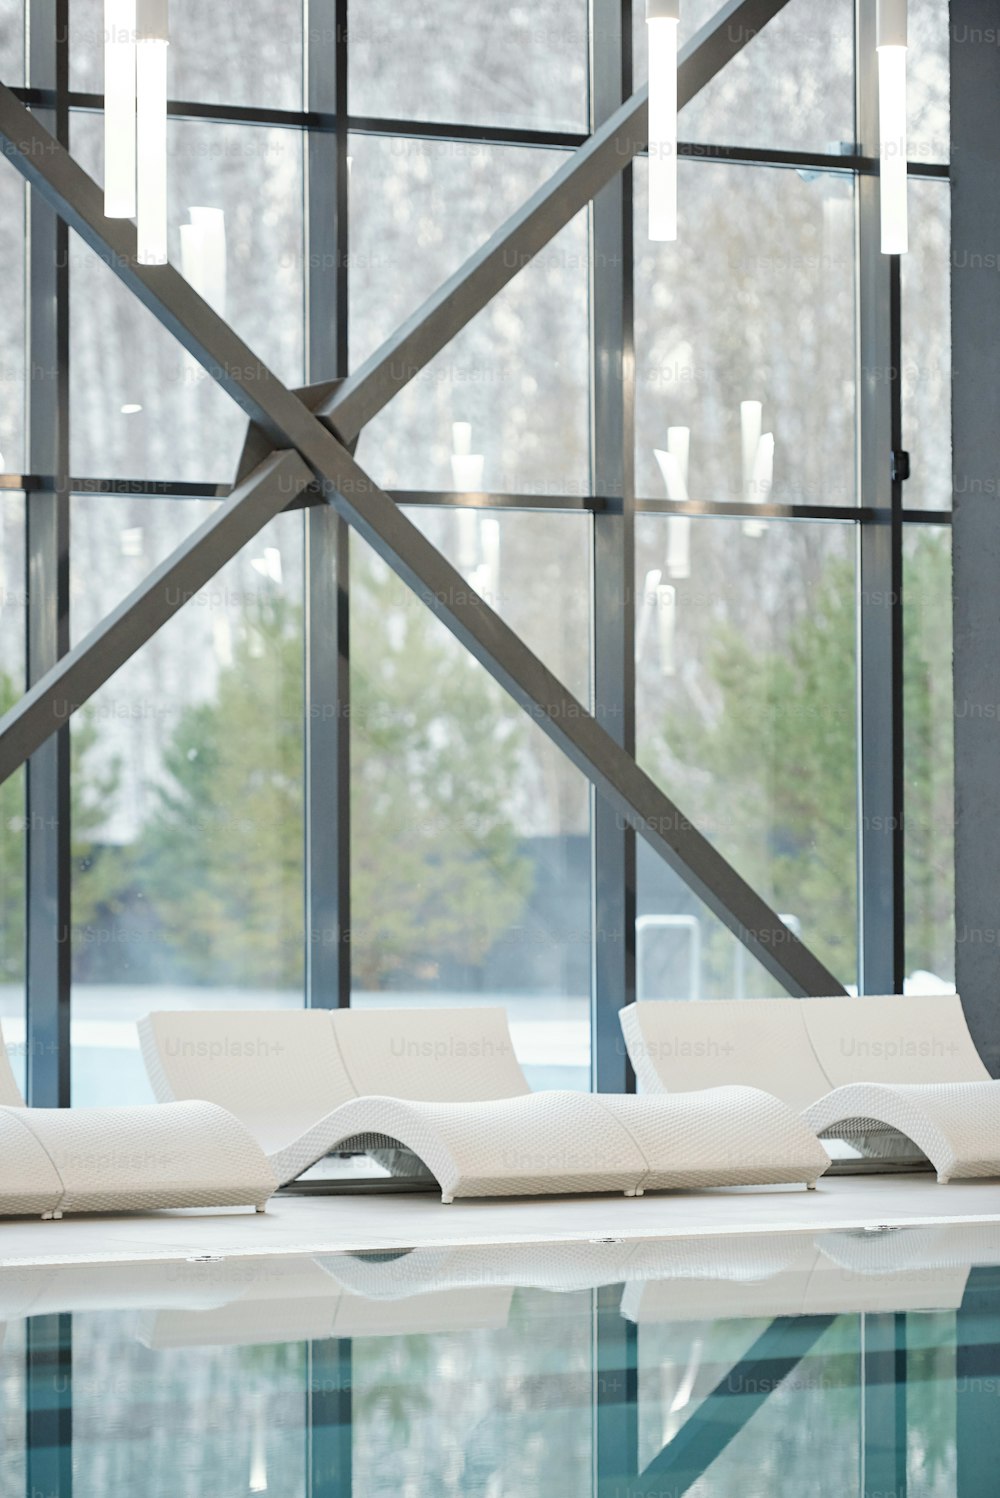 Fila de tumbonas blancas de pie a lo largo de grandes ventanales y piscina con agua transparente dentro de un moderno hotel, spa o centro de ocio